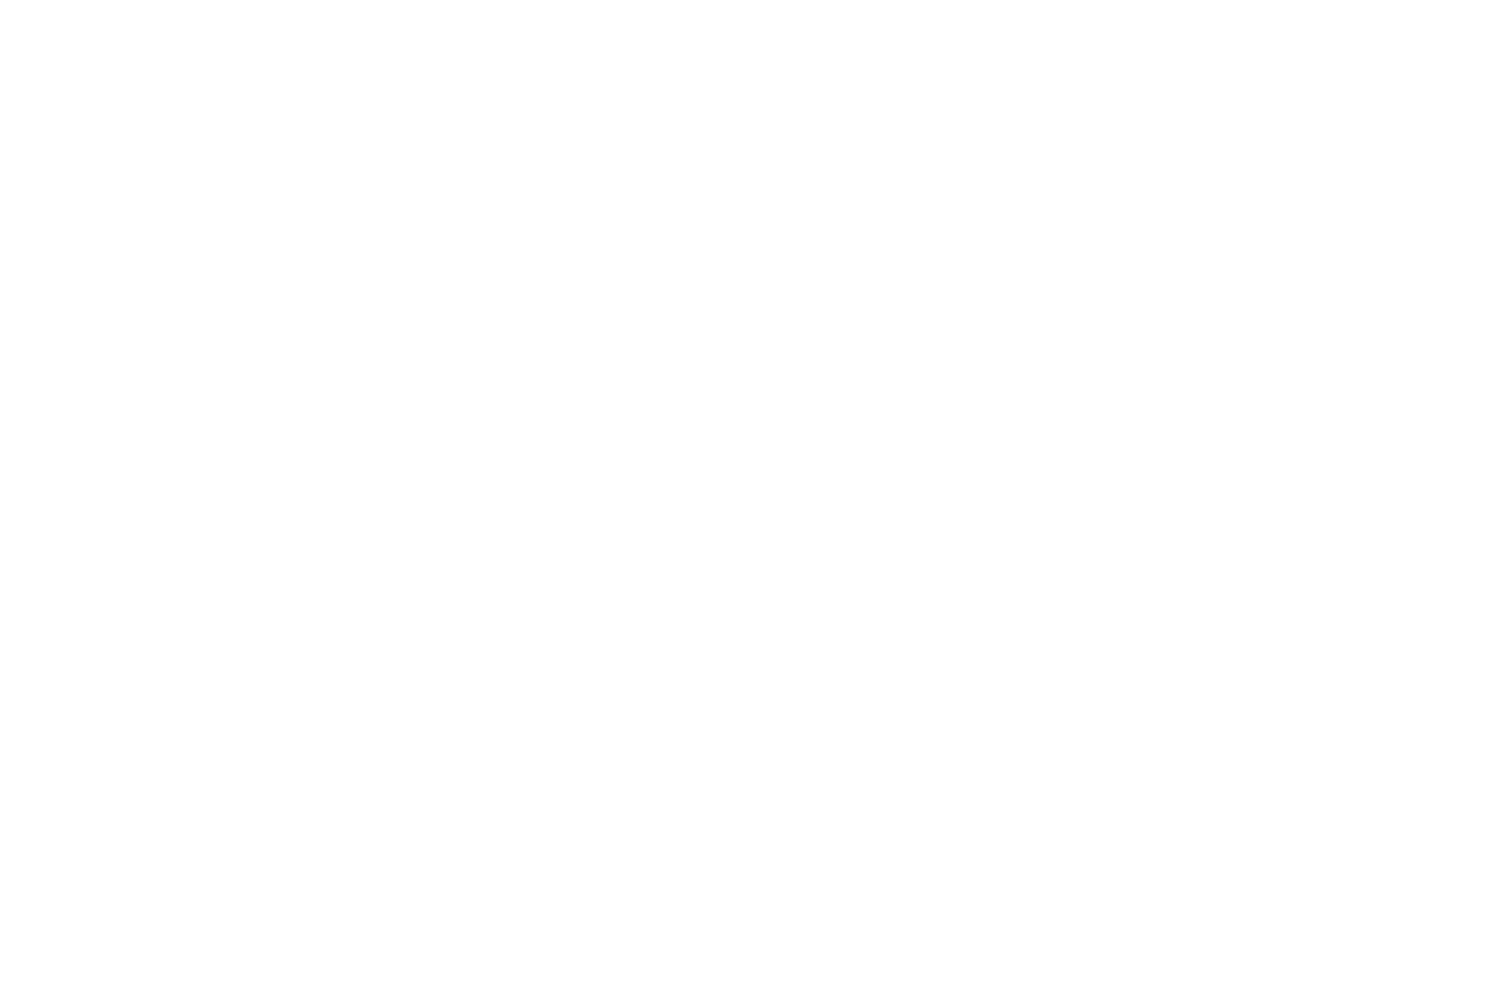 Cirkle